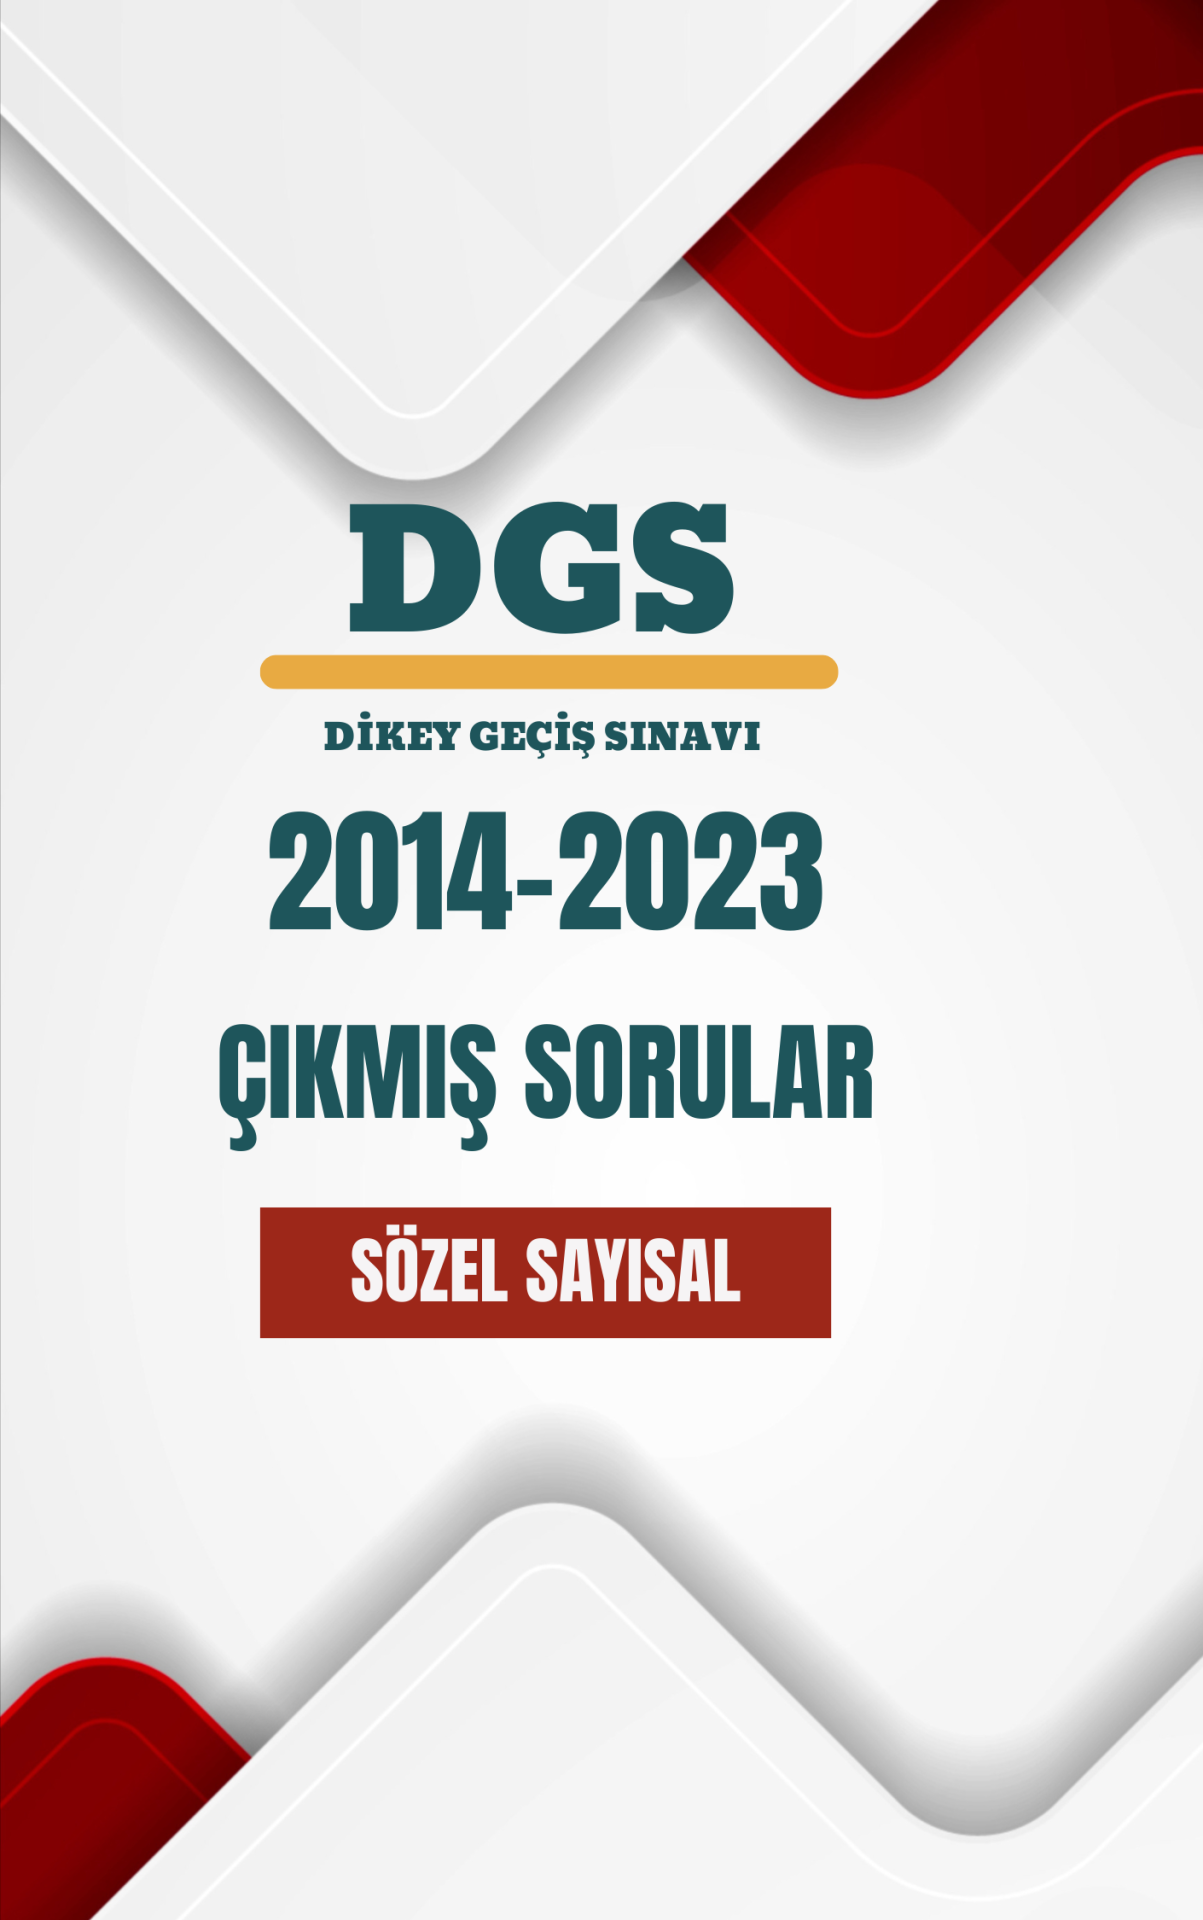 DGS (Dikey Geçiş Sınavı) 2014 - 2023 Arası Çıkmış Soruların Tamamı